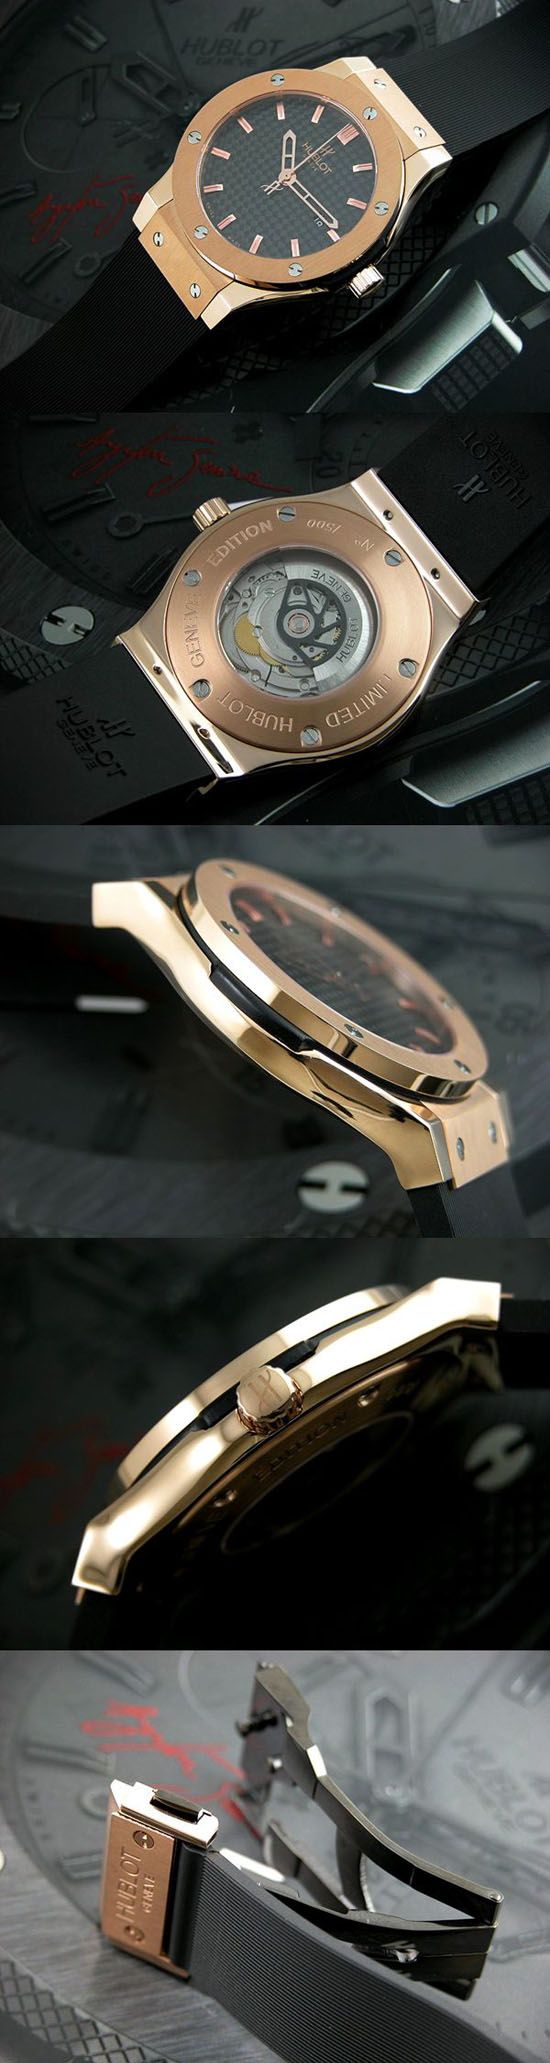 おしゃれなブランド時計がウブロ-ビッグバン-HUBLOT-561-PX-1180-RX-bc-男性用を提供します.